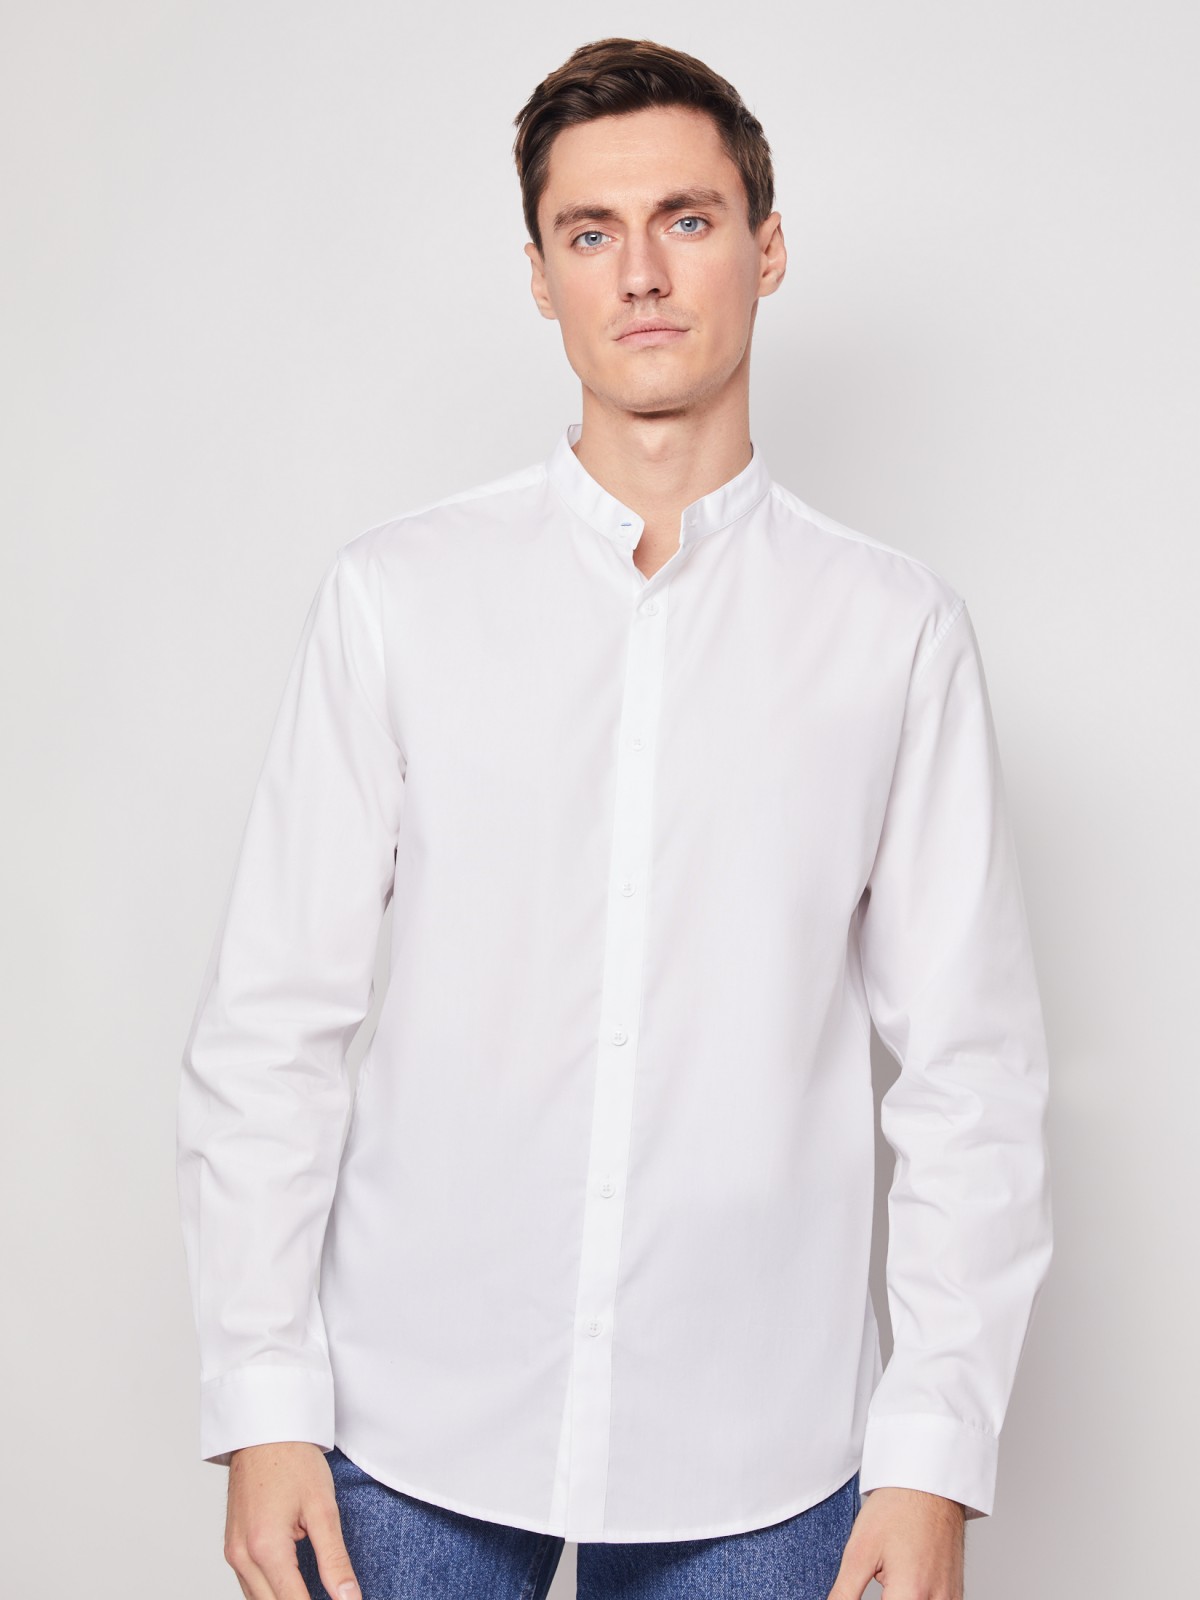 Рубашка с воротником-стойкой zolla 212112159012, цвет белый, размер S - фото 2